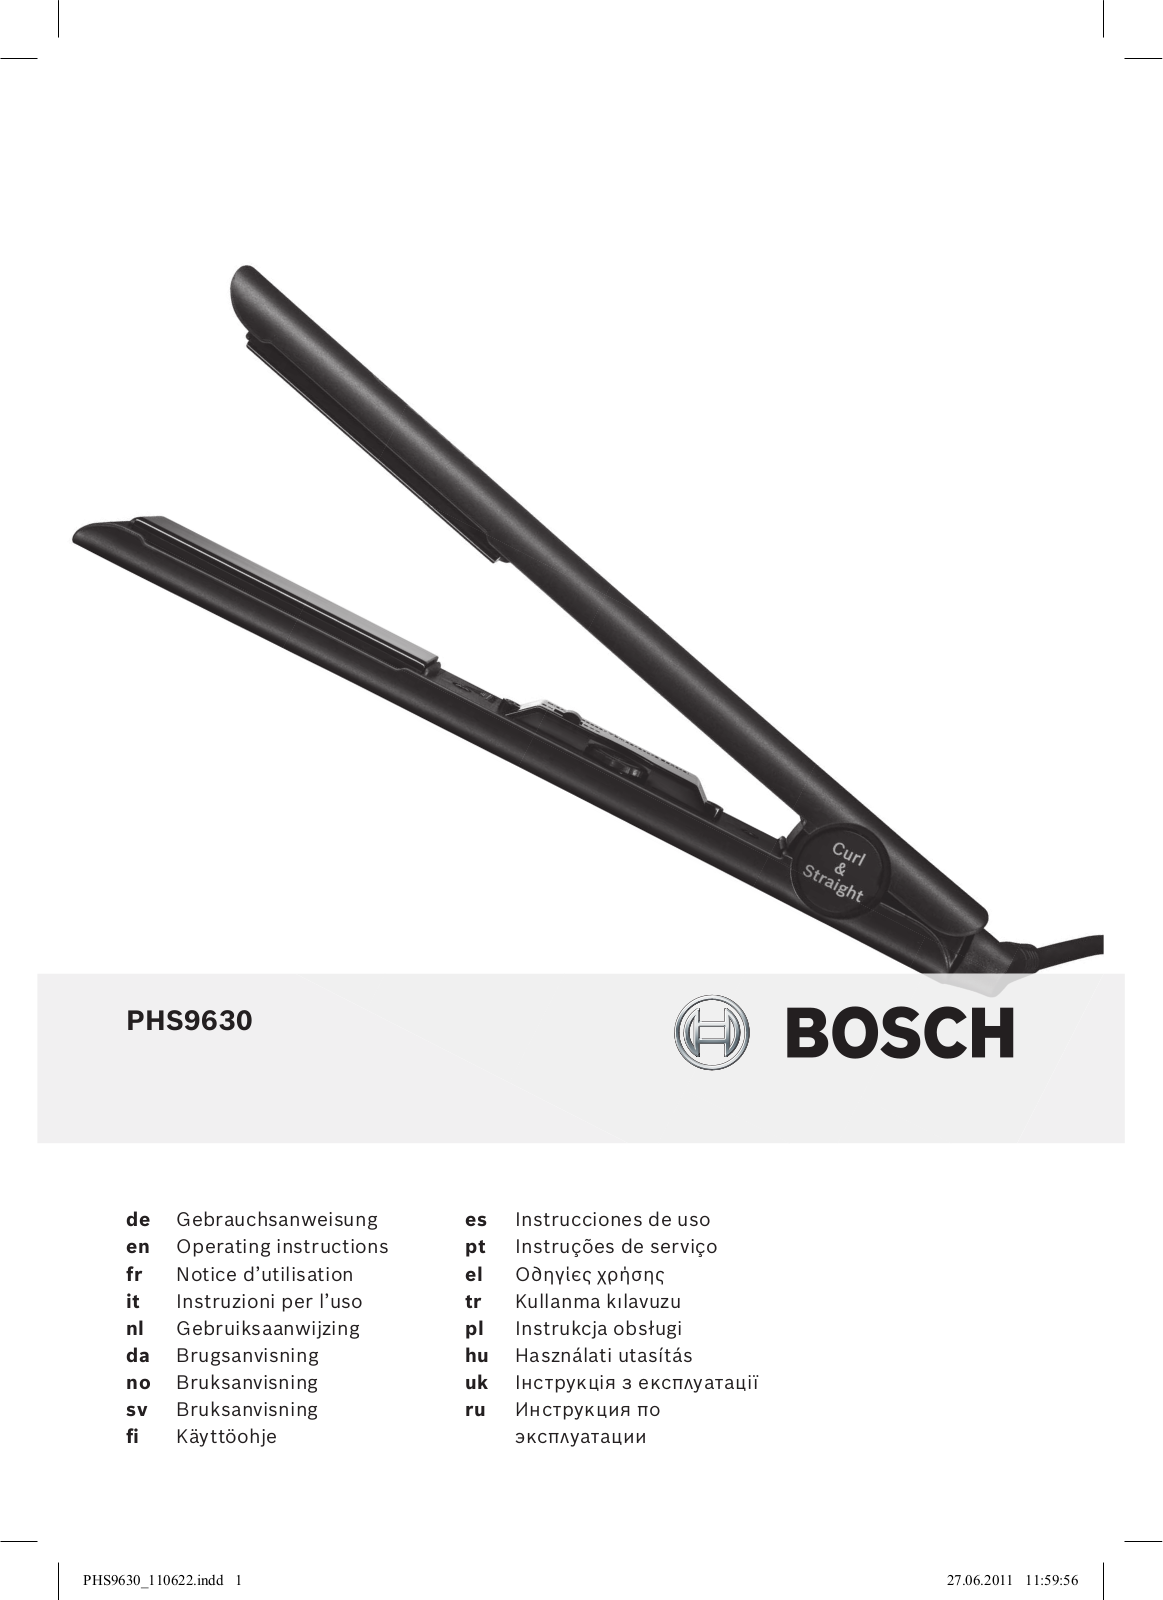 Bosch PHS 9630 User Manual